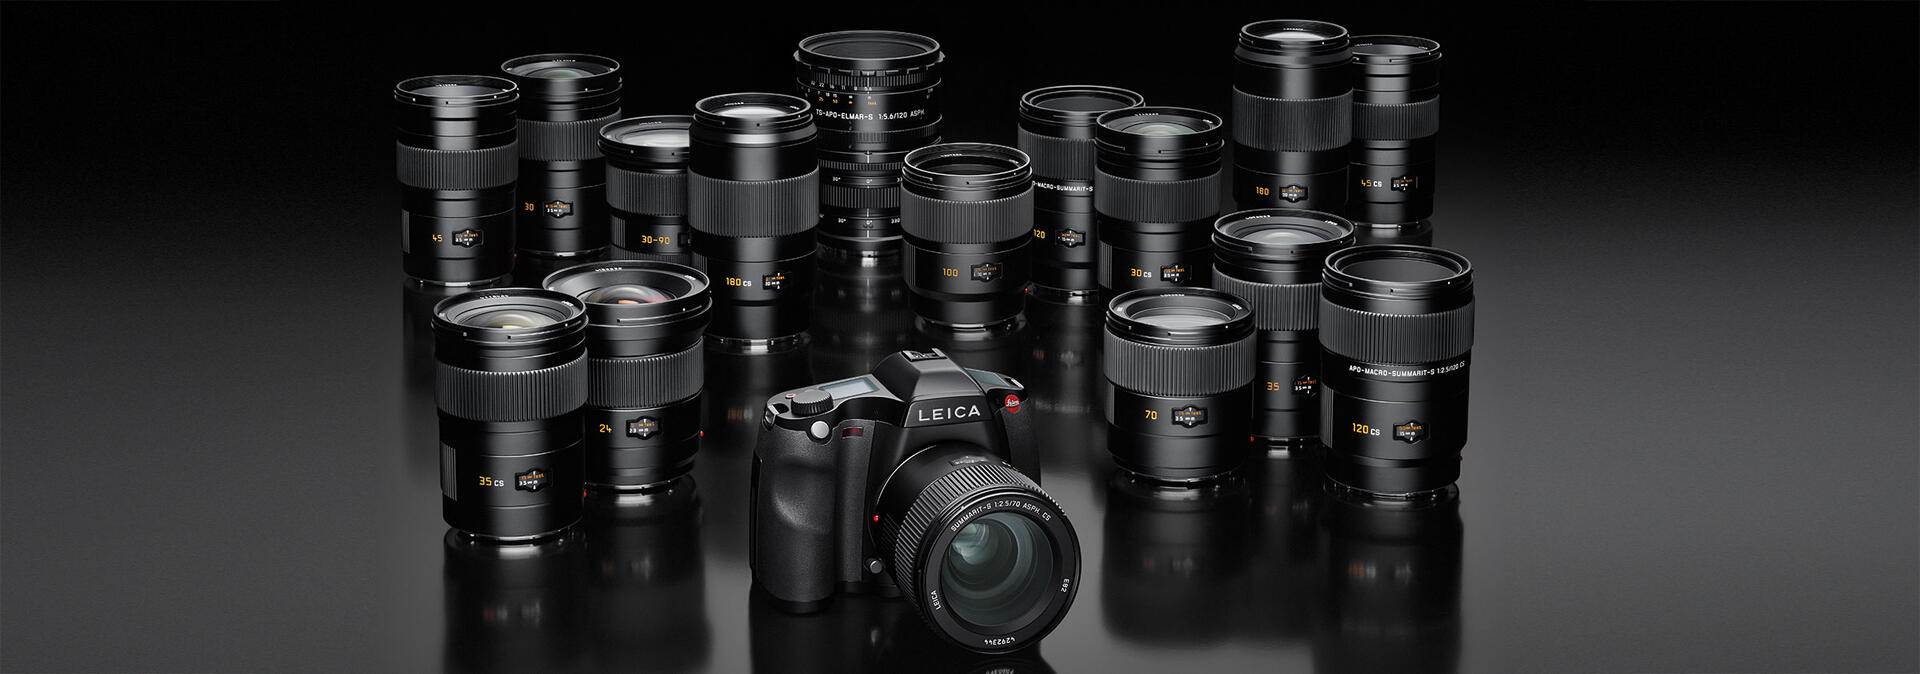 Leica S-System | Leica Camera US